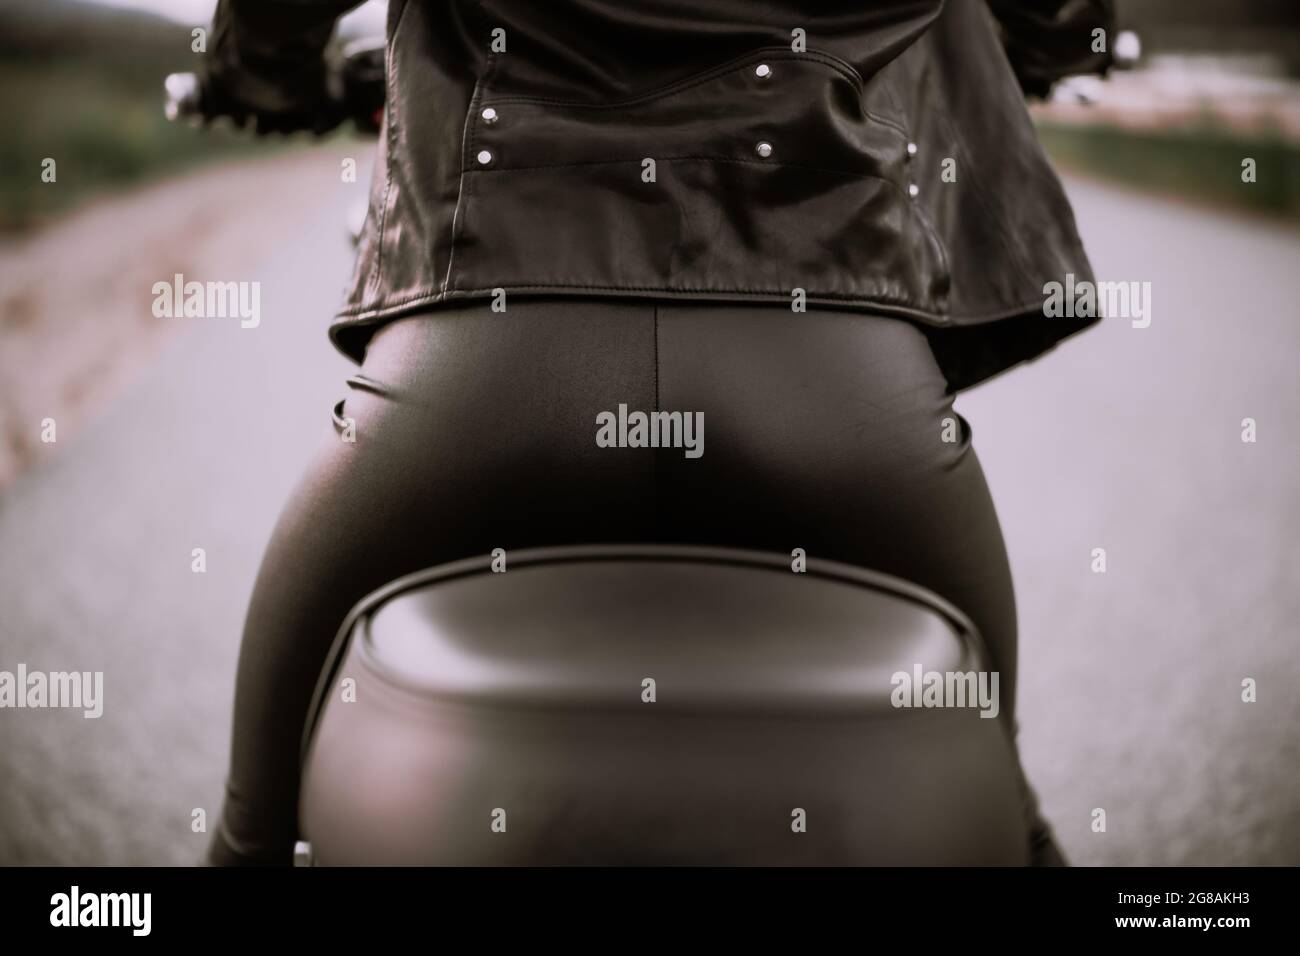 Stilvolle Motorradfahrerin Frau sitzt auf dem Motorrad. Weibliche Treiberin im Freien. Gesäß in Lederhosen. Trip, Cafe Racer, Speed, Freedom-Konzept. Stockfoto